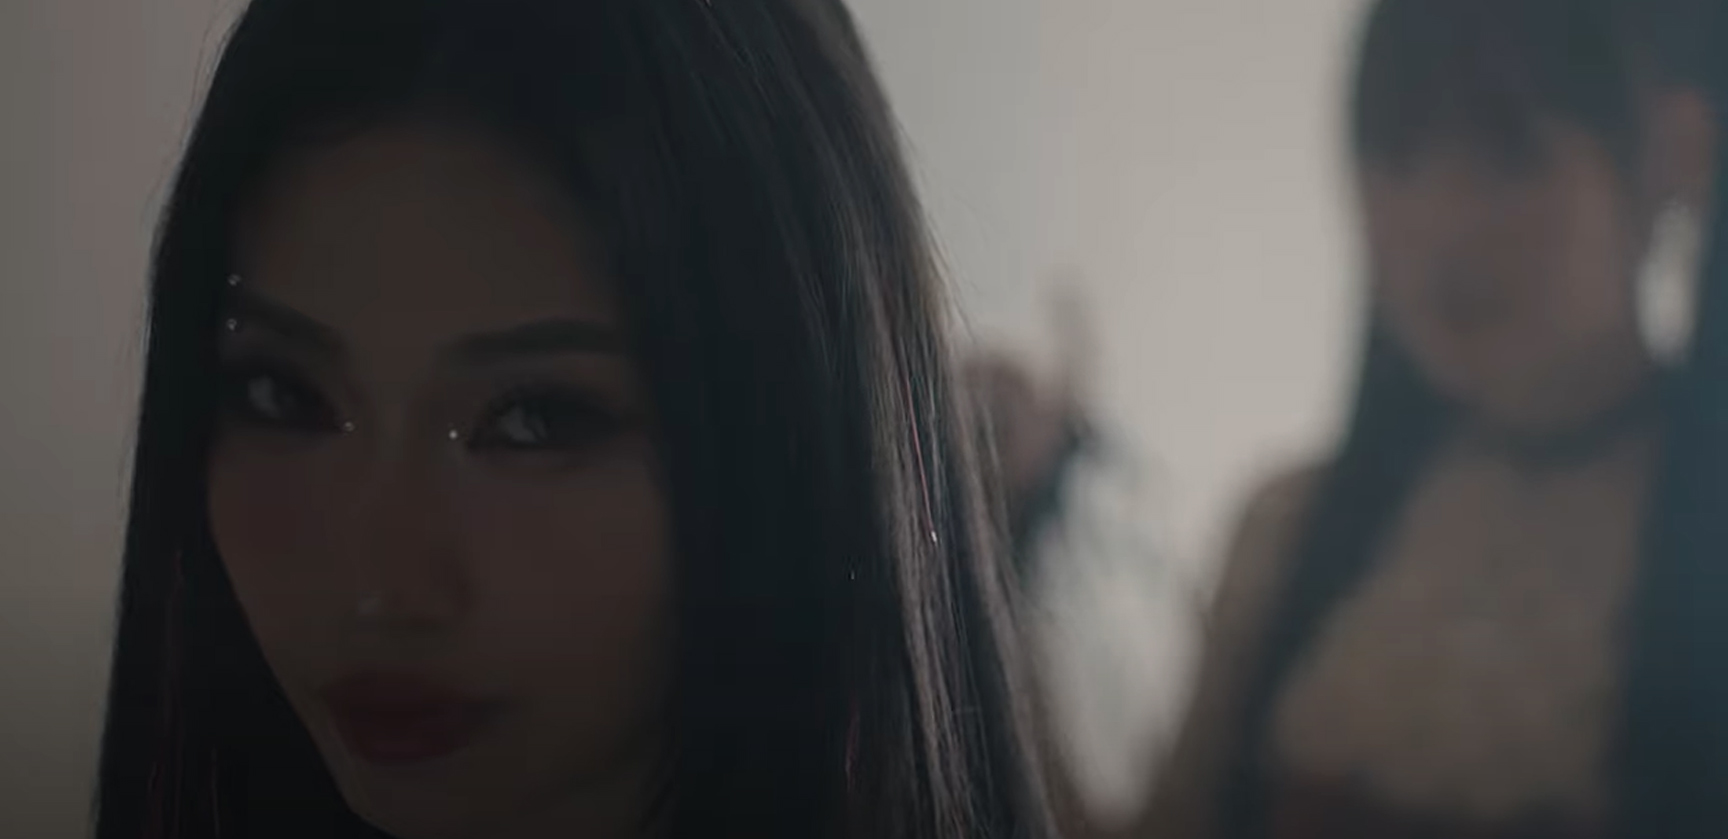 LUNAS gây sốt với Teaser MV Moonlight vọn vẻn 20 giây - ảnh 5